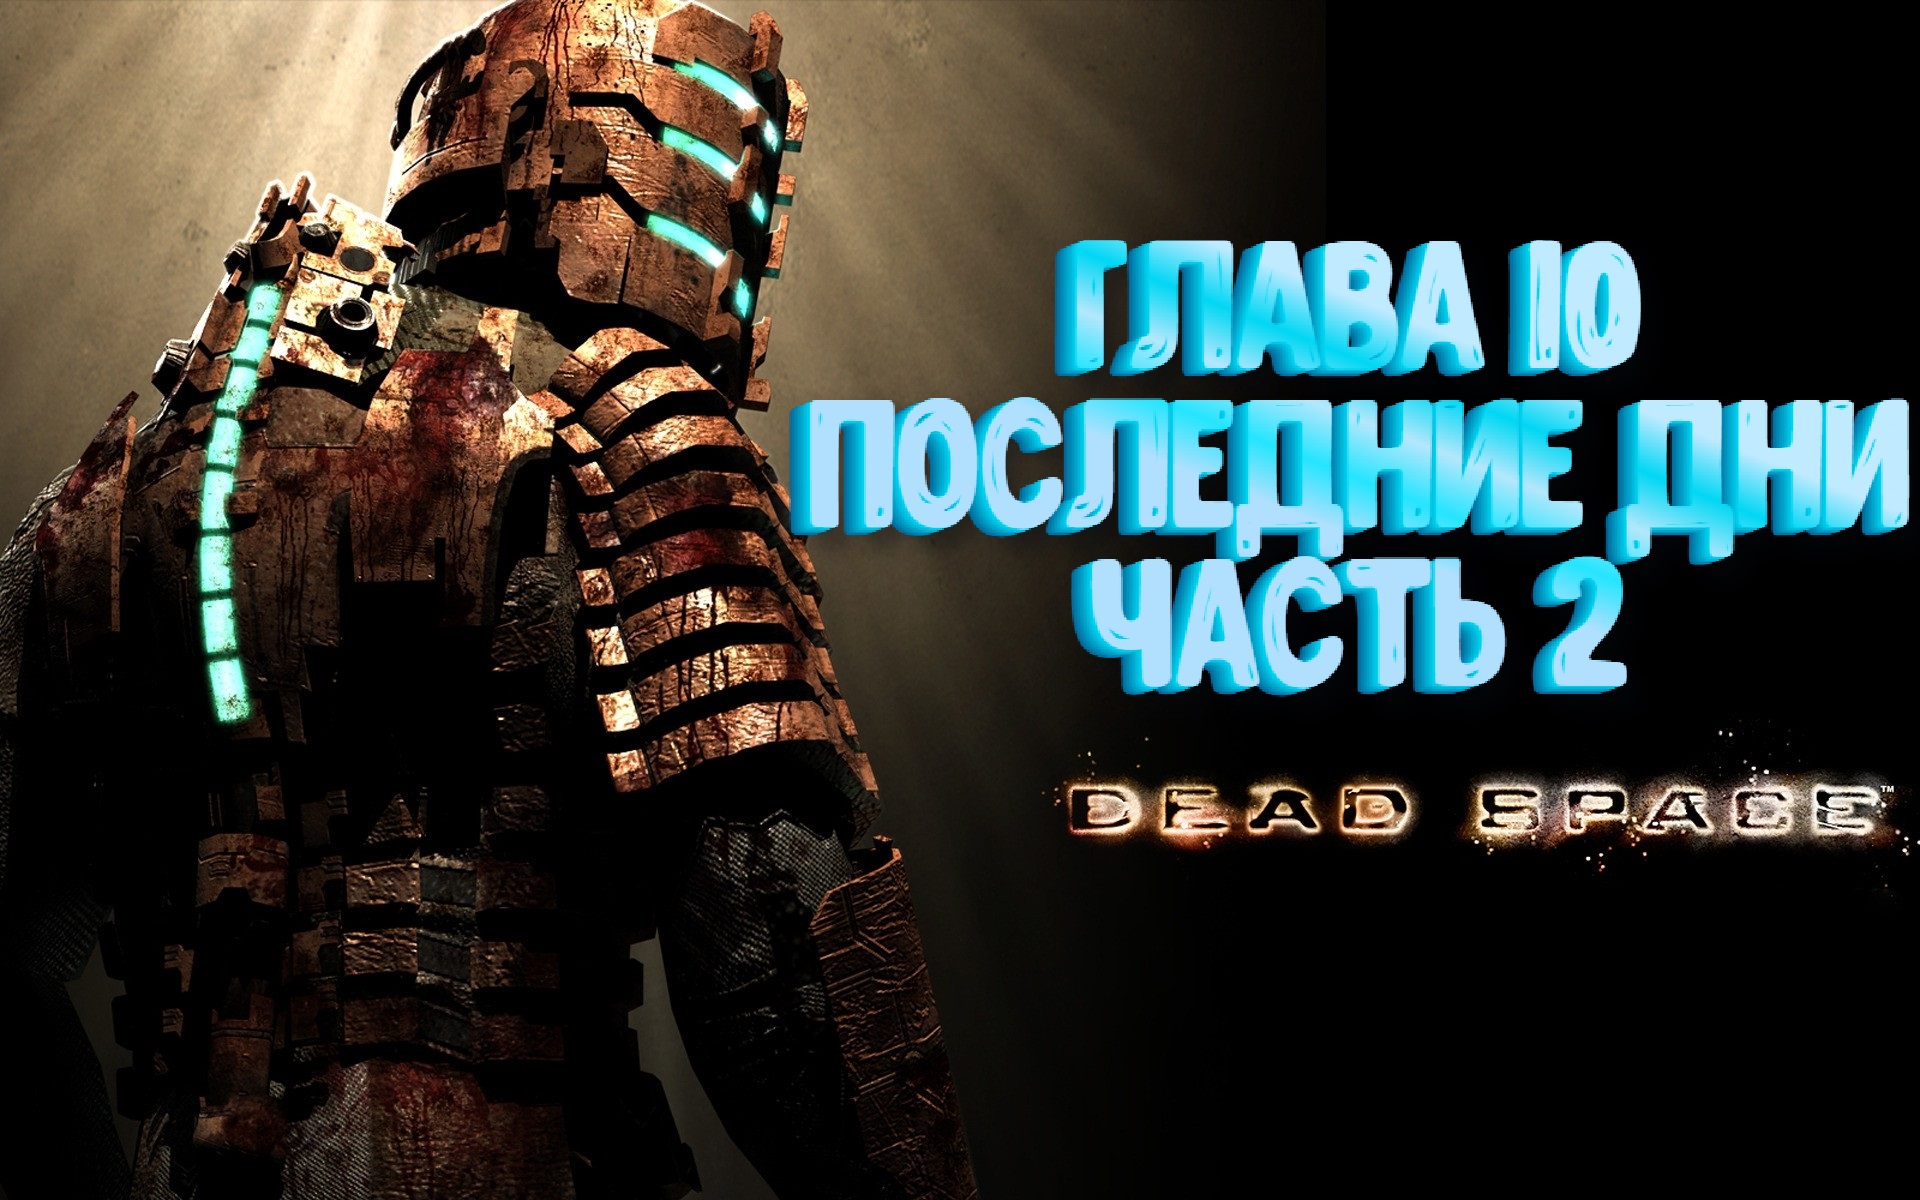 Dead Space ﹥ Глава 10 ﹥ Последние дни ﹥ часть 2